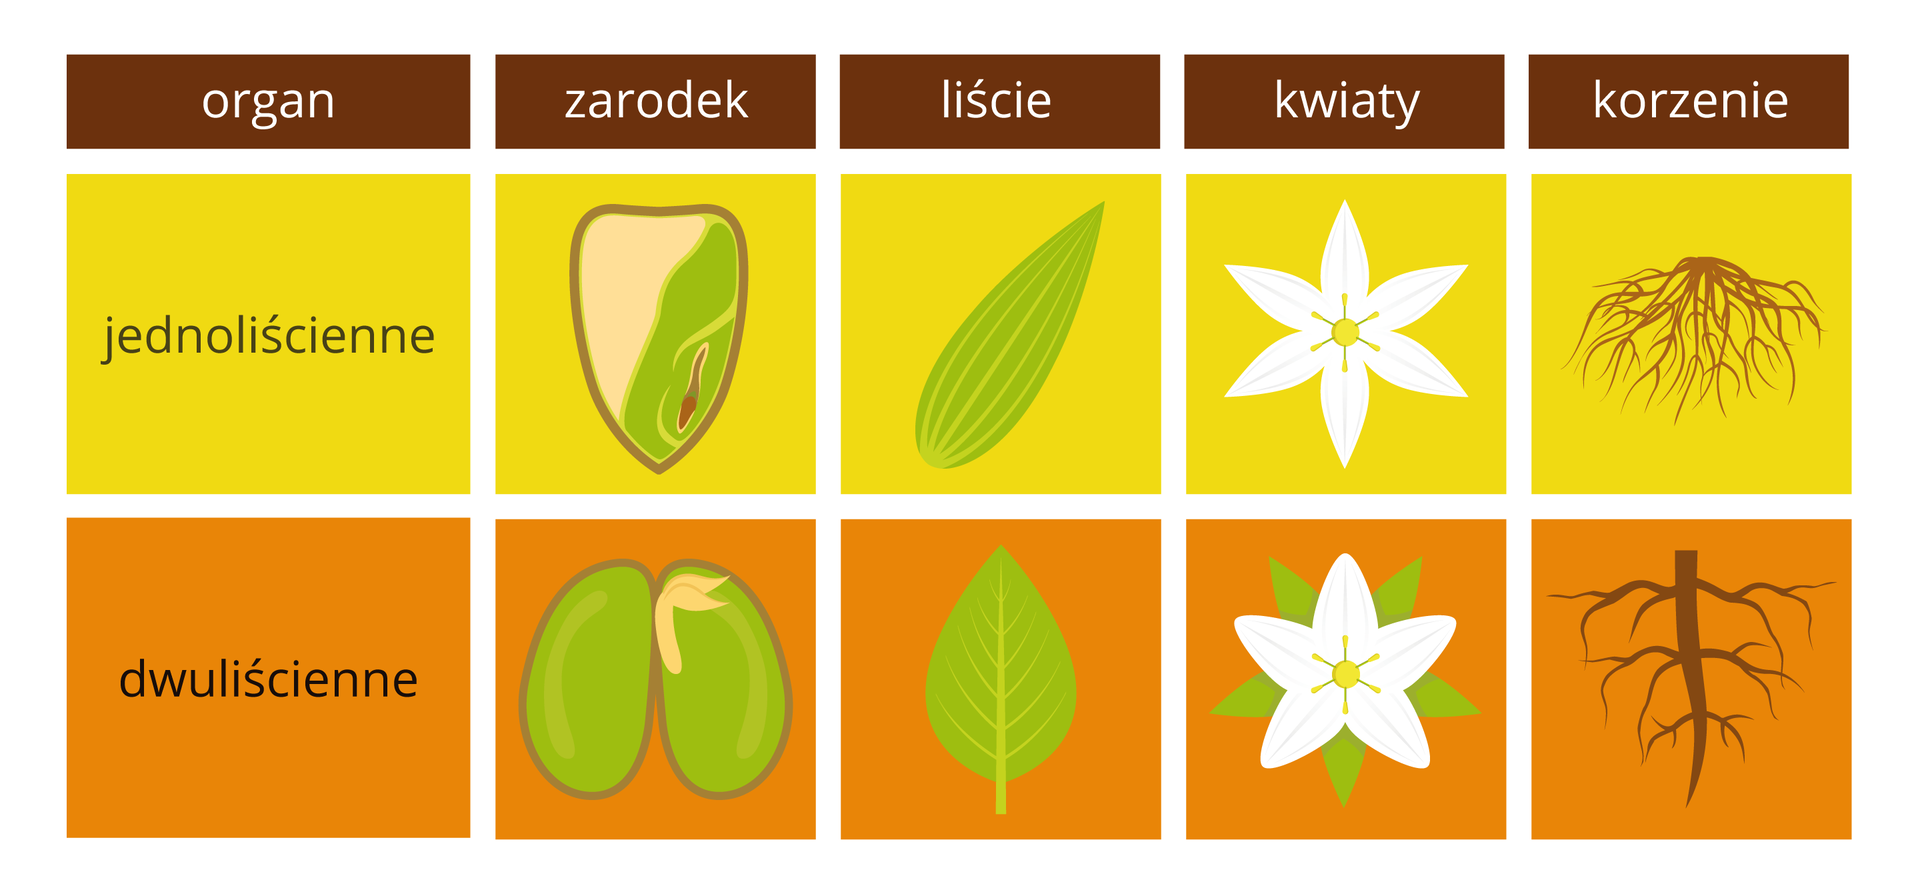 Ilustracja przedstawia porównanie cech roślin jednoliściennych (żółte prostokąty) i dwuliściennych (pomarańczowe prostokąty) w formie tabeli. U góry w brązowych prostokątach wypisano porównywane organy. W żółtych i pomarańczowych kolumnach znajdują się rysunki organów roślin.